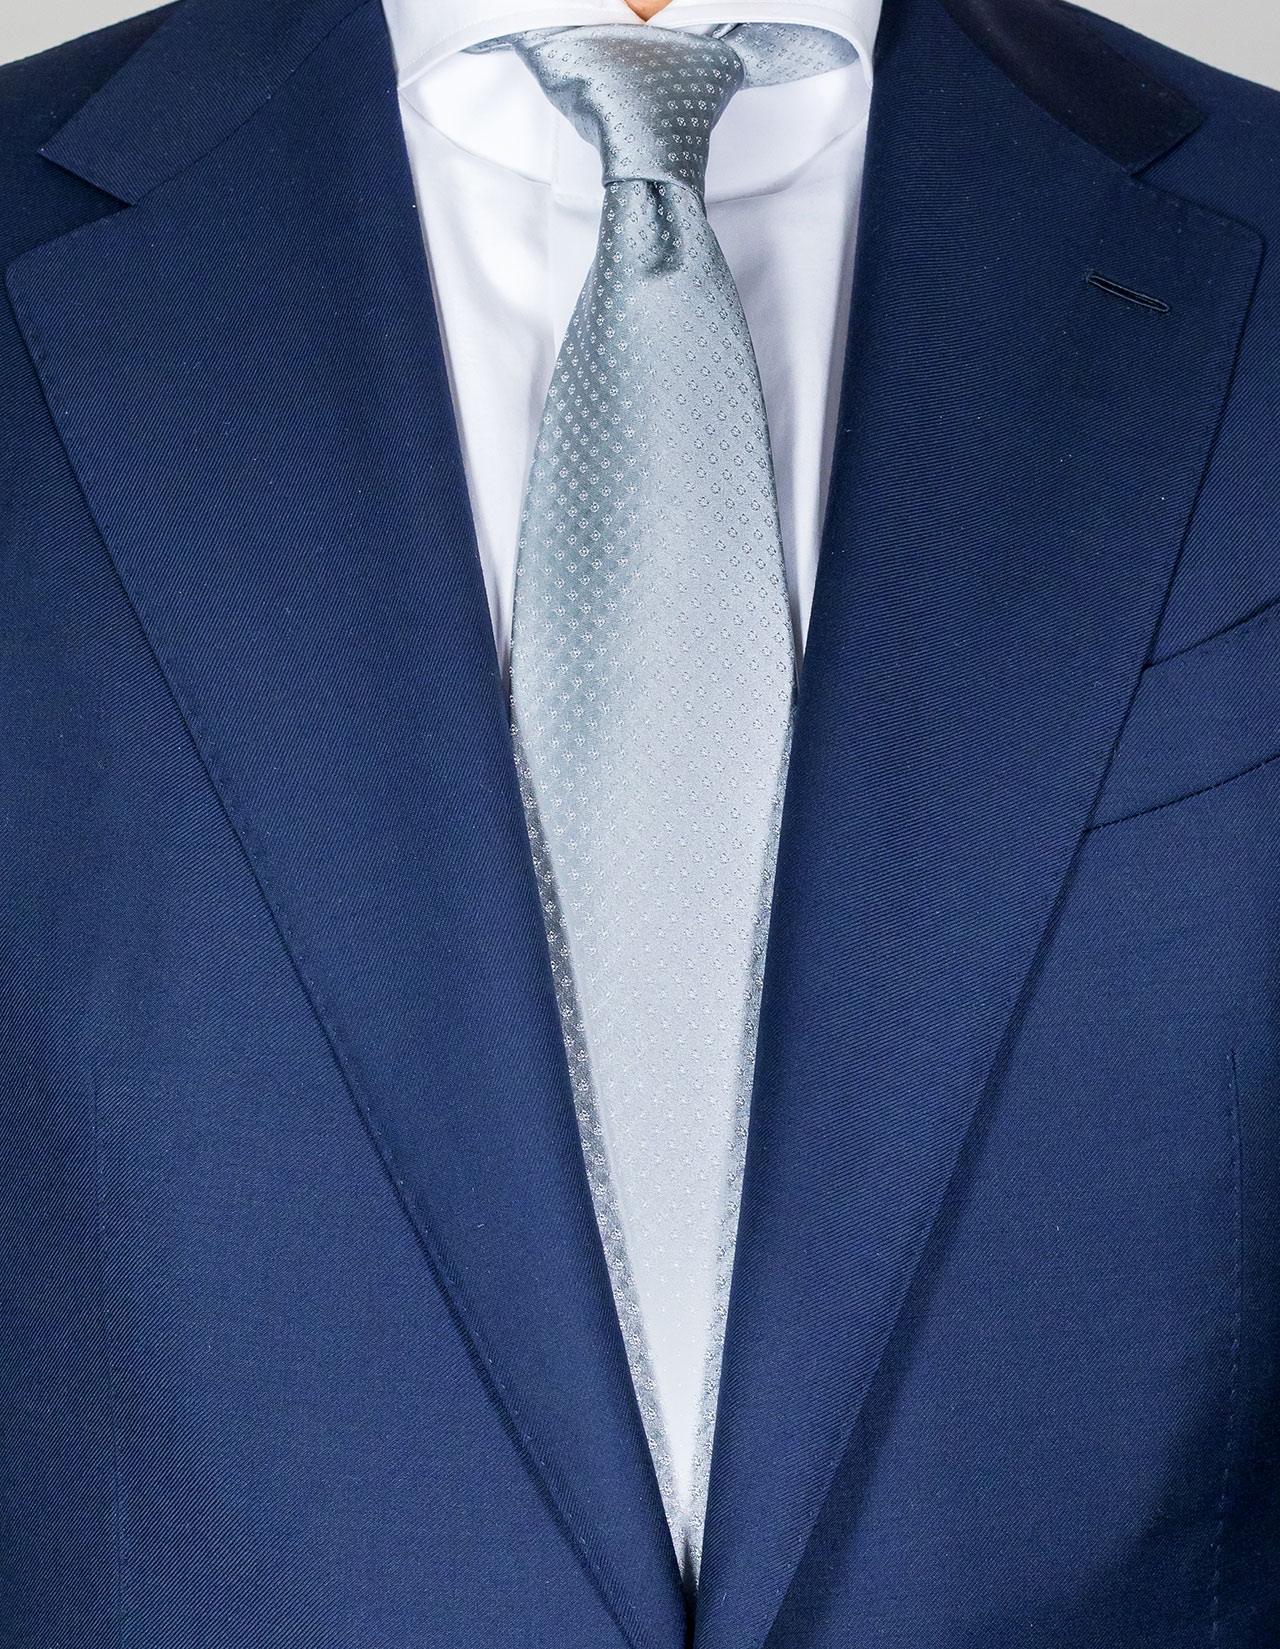 Kiton Krawatte in silber mit feinem kleinen Muster